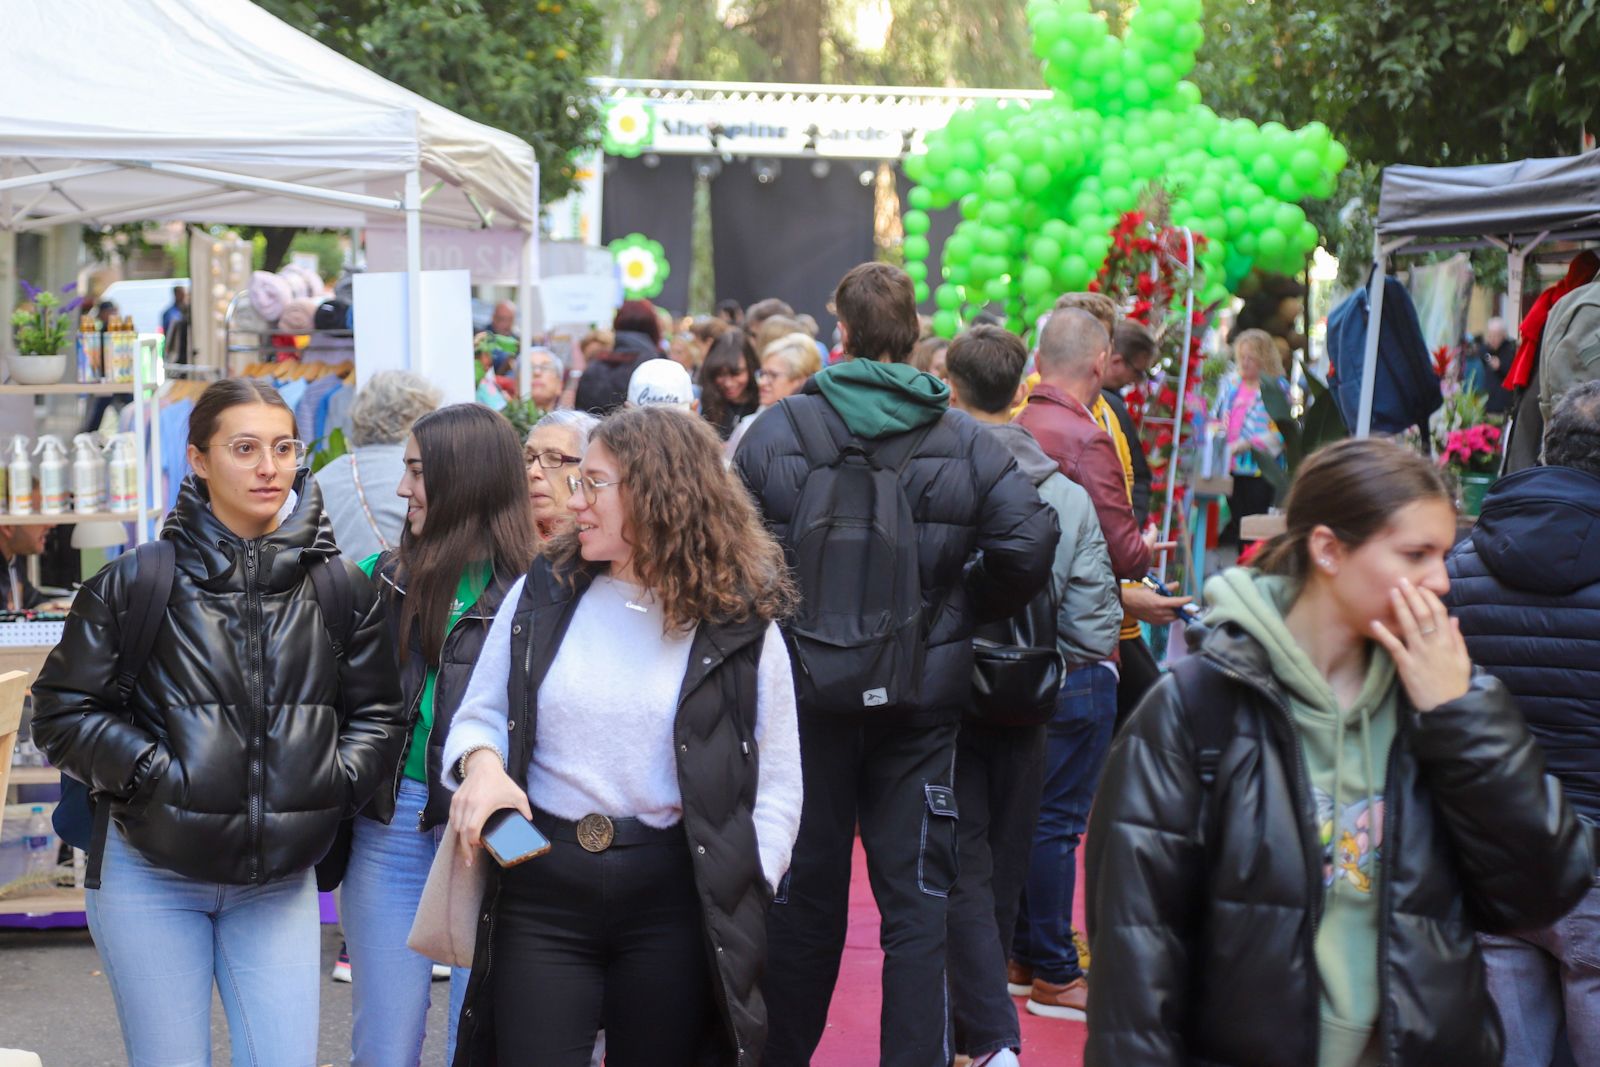 Ciudad Jardín celebra su Garden Shopping para fomentar el comercio de barrio